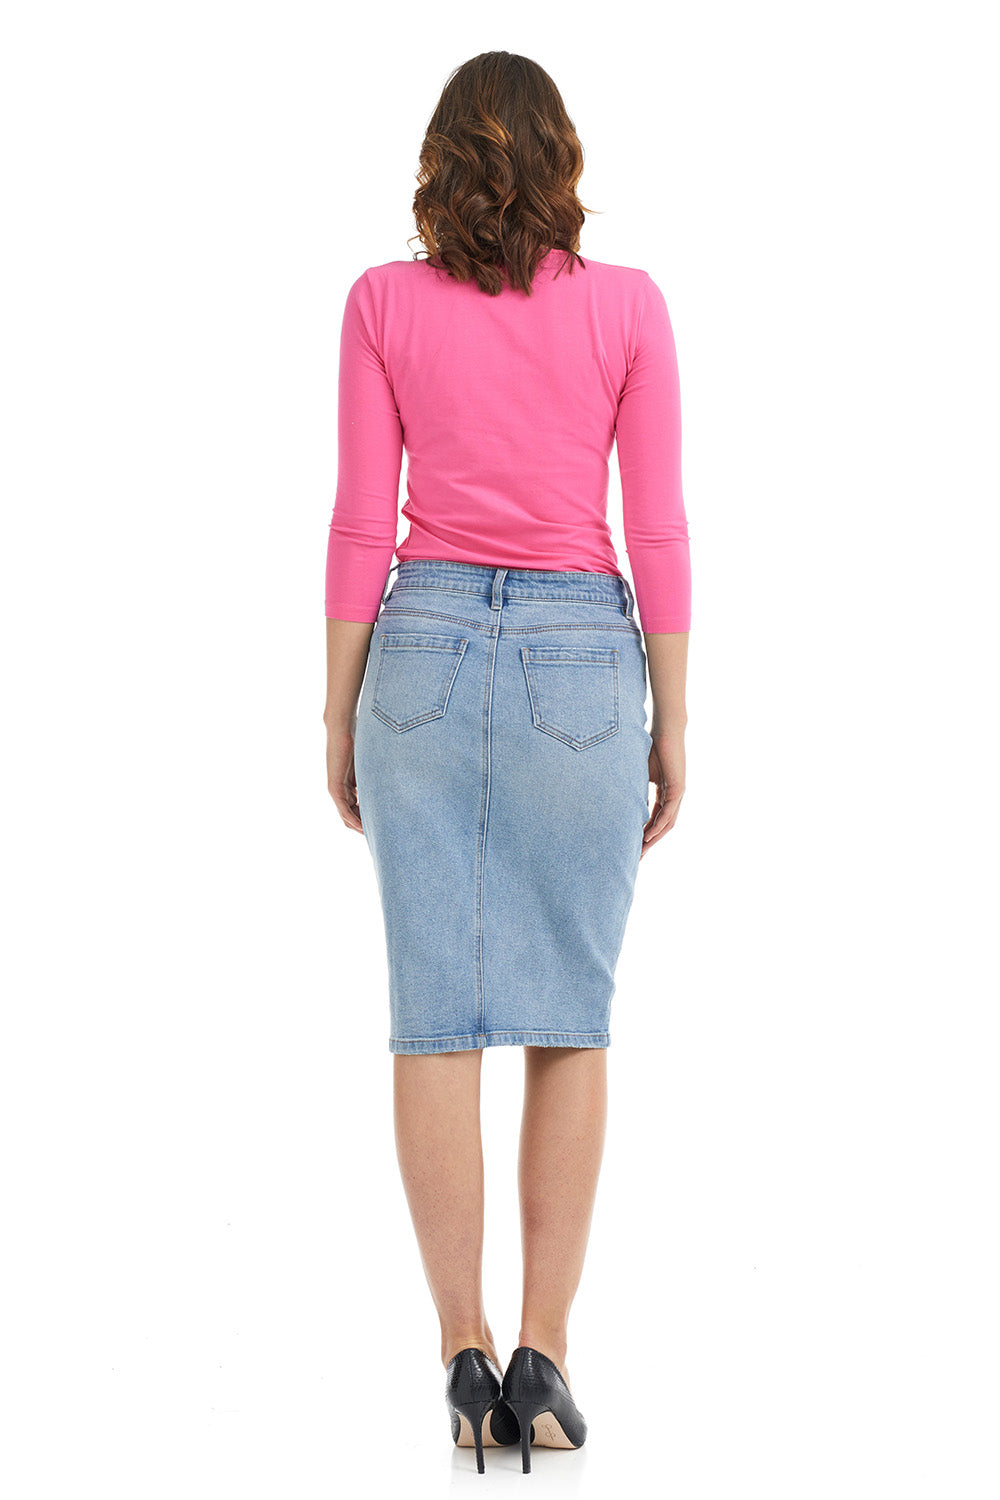 Esteez HAVANA Denim Skirt - Classic Straight Jean Skirt for Women - BLEACH BLUE